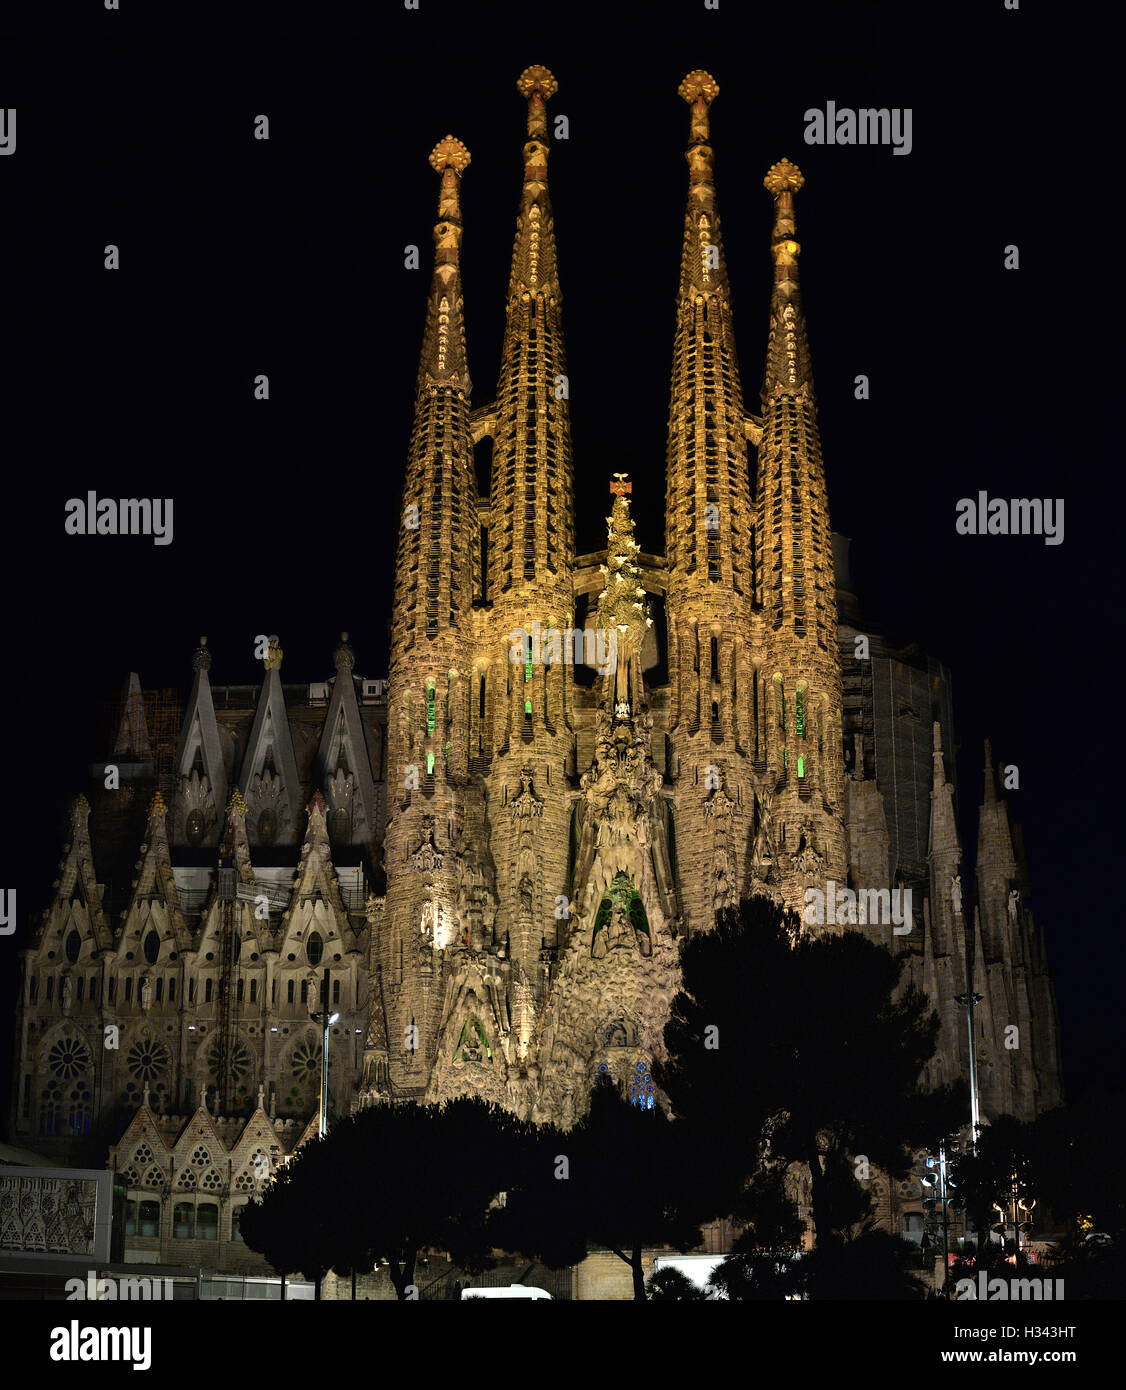 Holy Family Church at night Barcelona Spain Stock Photo - Alamy